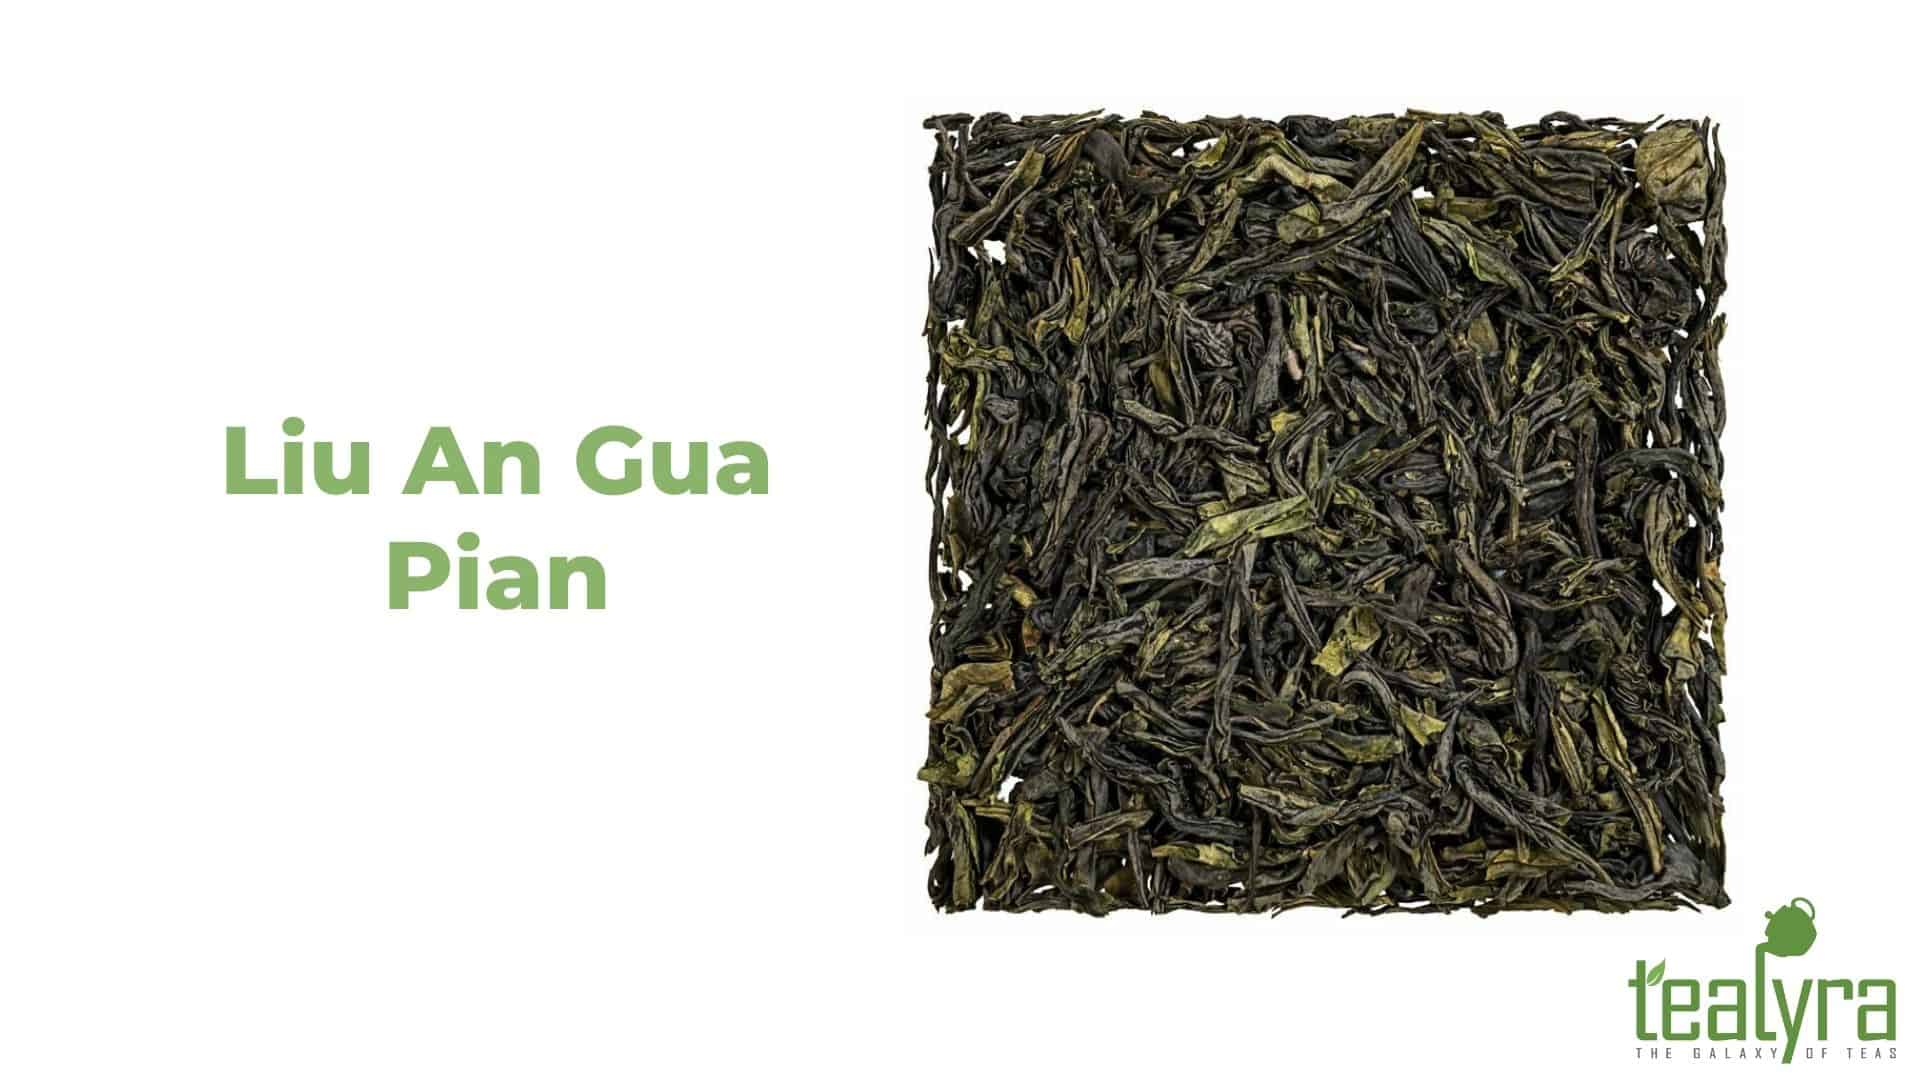 image-Liu-An-Gua-Pian-tea